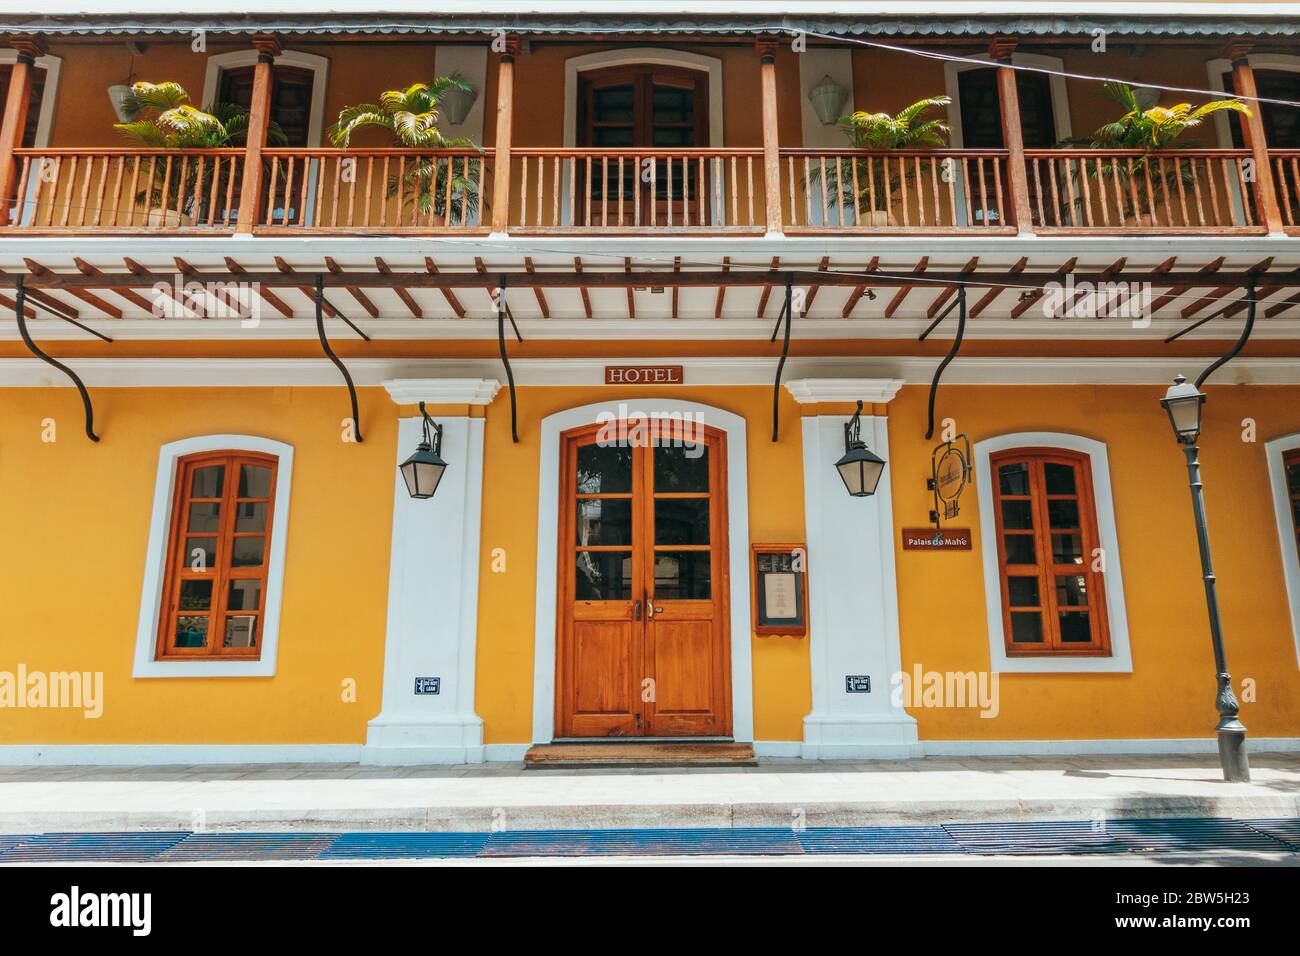 Un hotel en un edificio restaurado de la época colonial francesa con carpintería de madera en White Town, Pondicherry, India Foto de stock